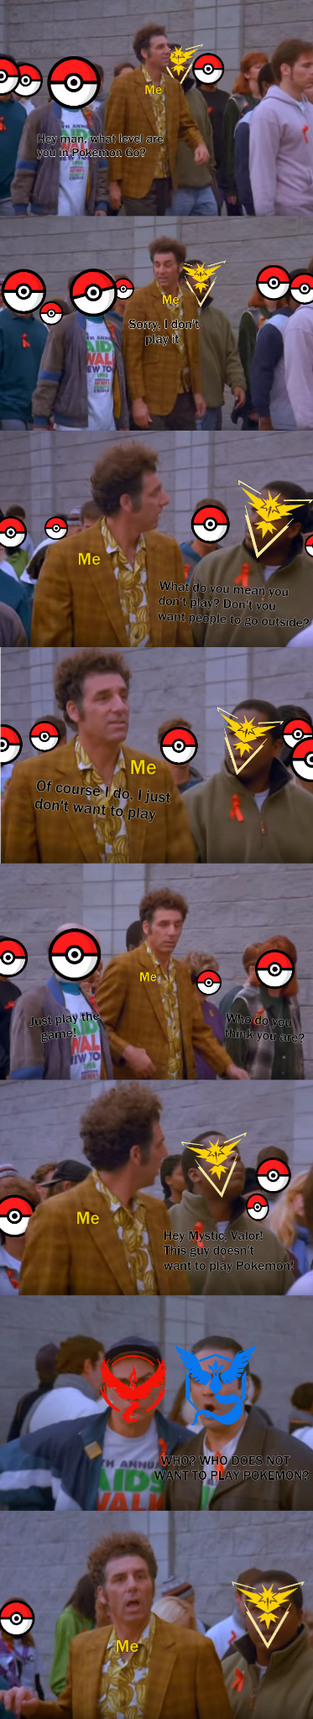 Me during the pokemon shitstorm - meme